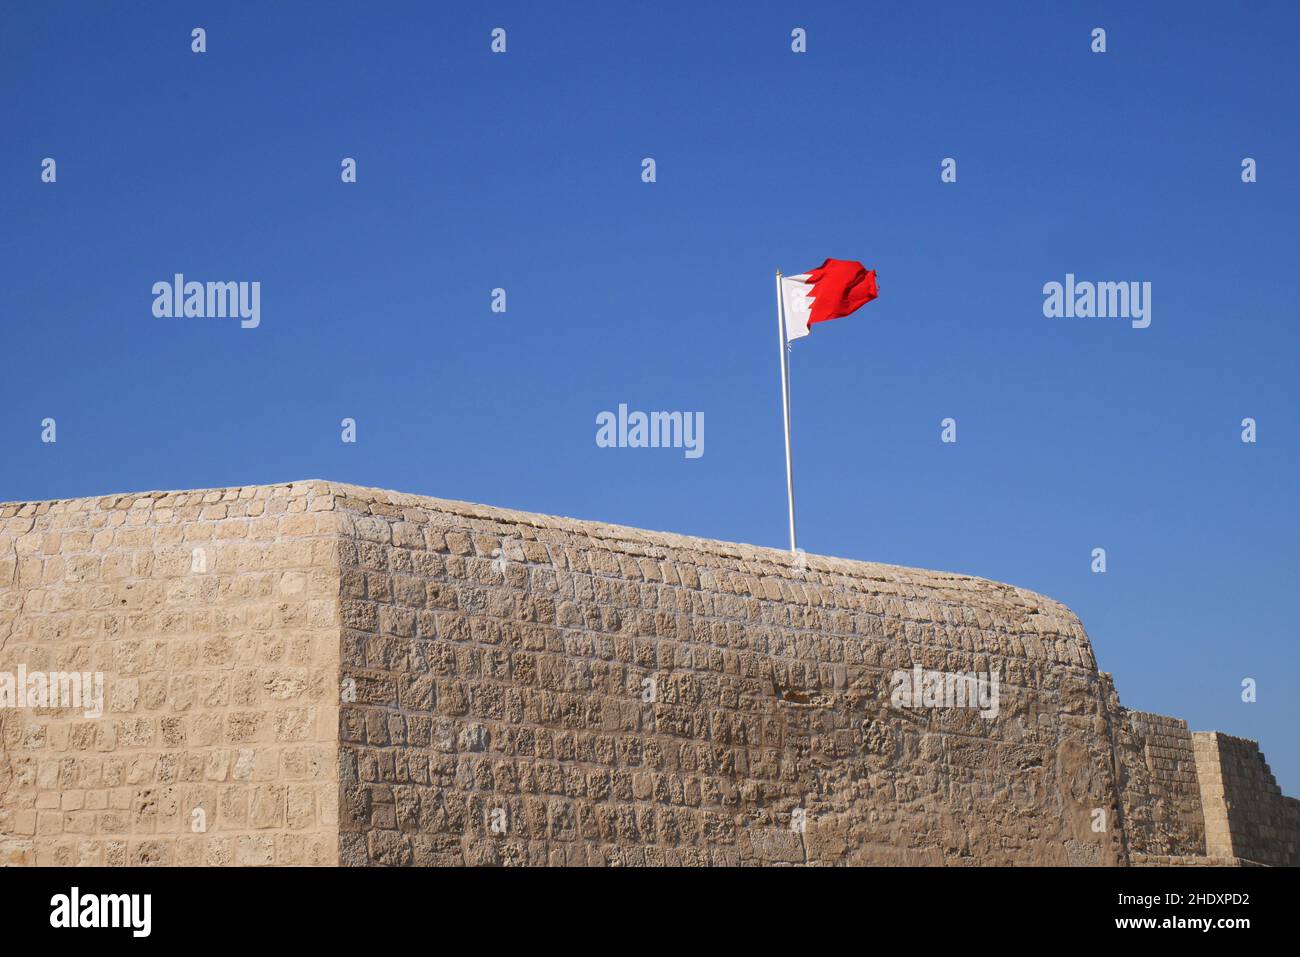 Murs fortifiés du fort de Bahreïn, ou fort portugais, avec le drapeau de Bahreïn, Royaume de Bahreïn Banque D'Images